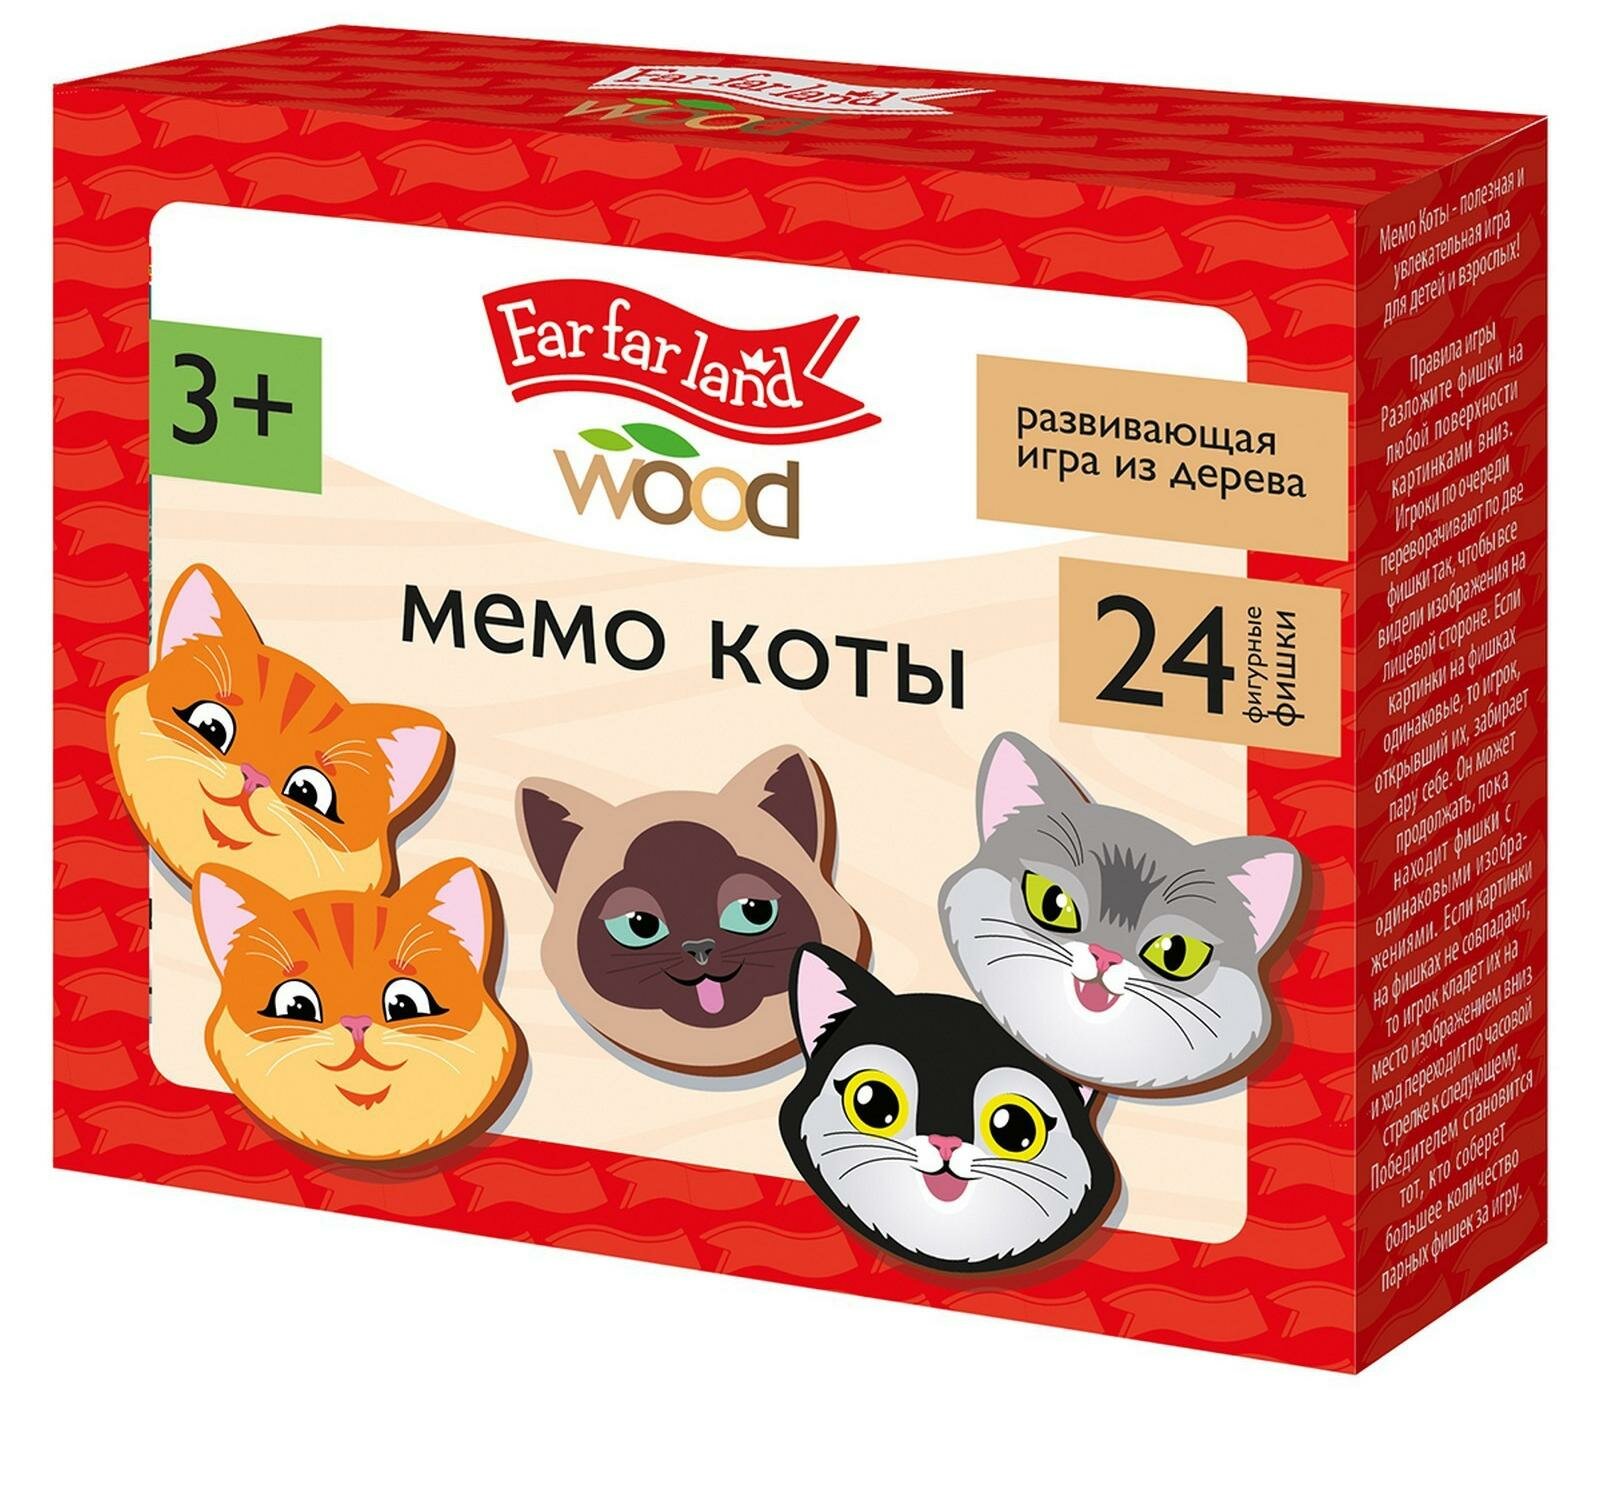 Игра настольная мемо "Коты" Far far land wood (24 фишки в коробке)